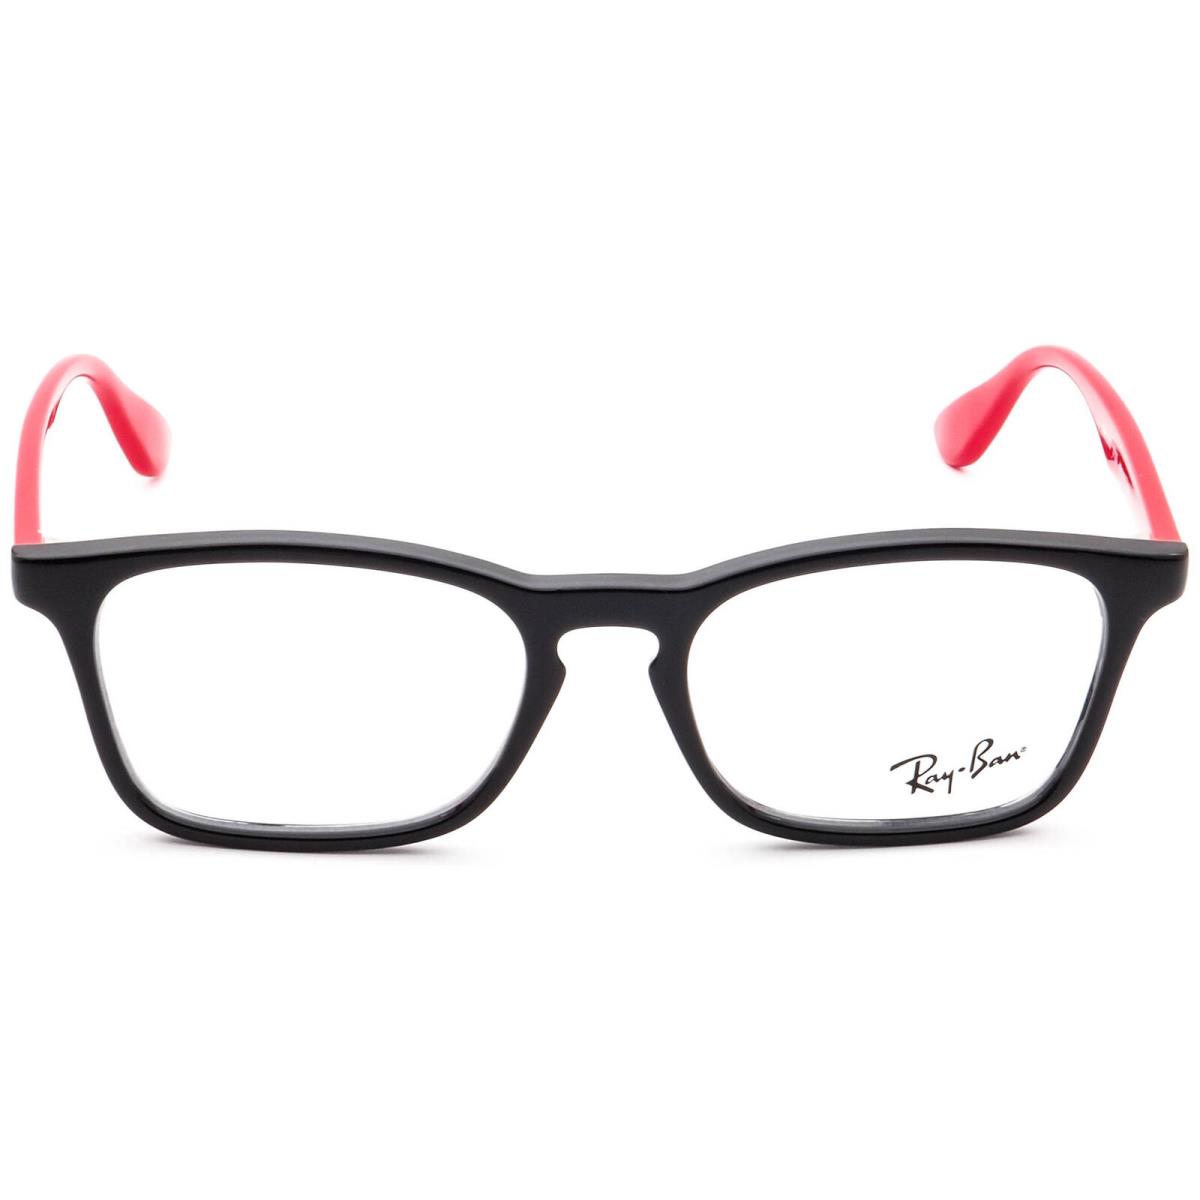 Ray-ban Kids` Eyeglasses RB 1553 3725 Black on Red Rectangular Frame 46 16 130